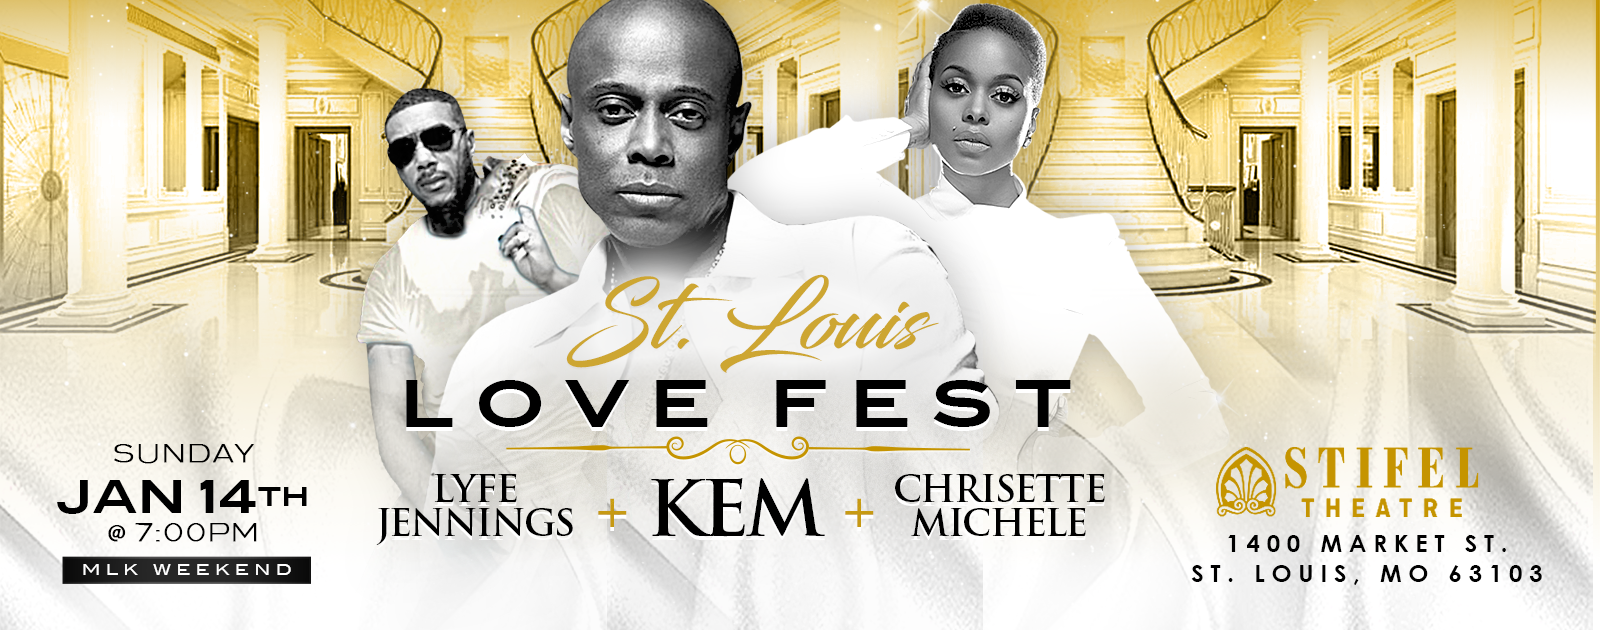 St. Louis Love Fest